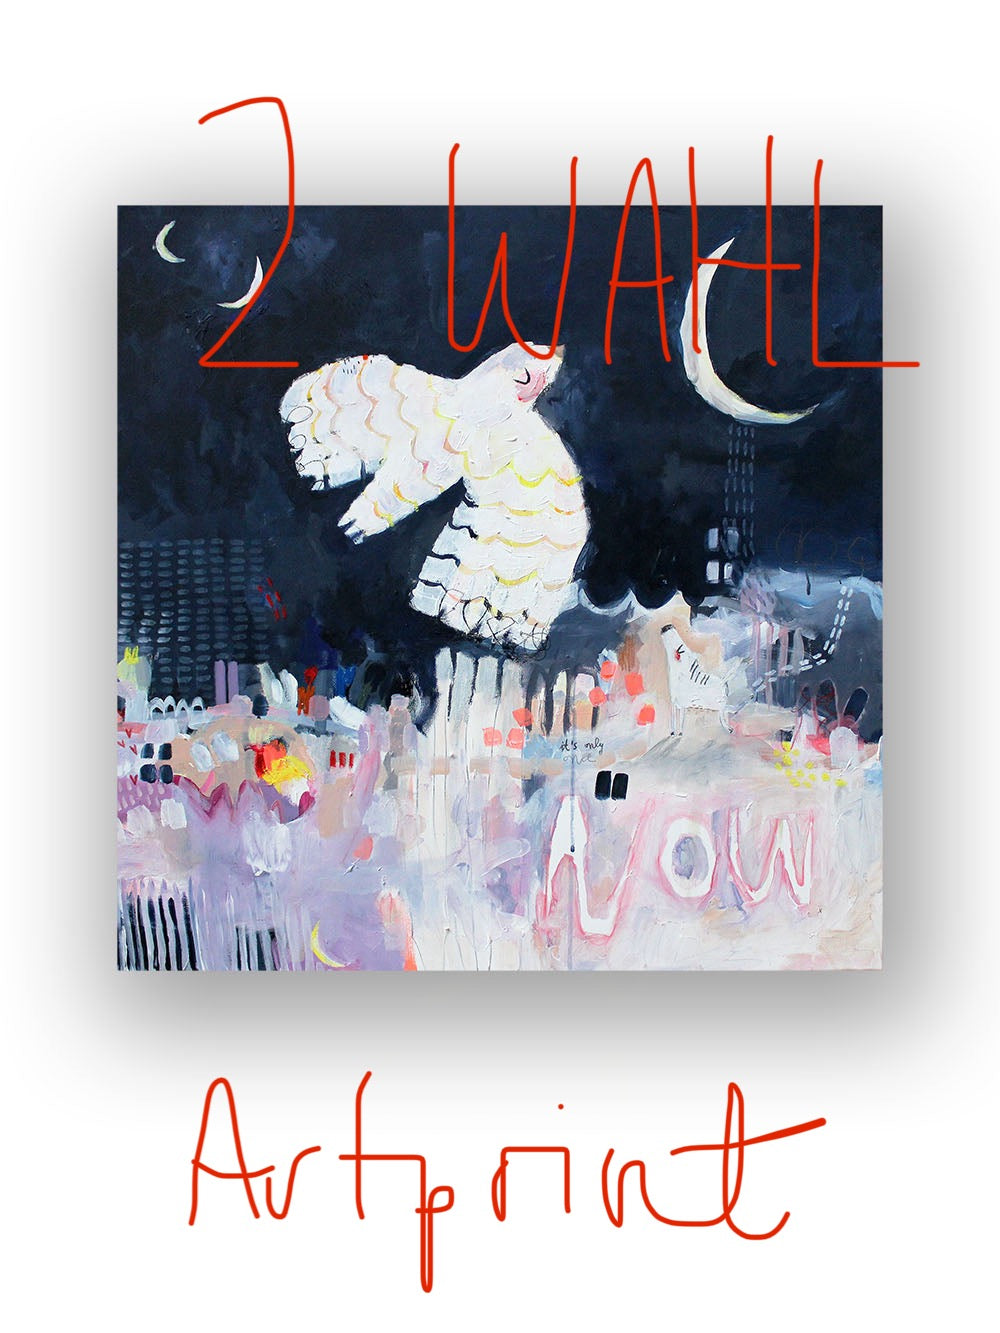 2.Wahl Artprint "Now" 50x50cm